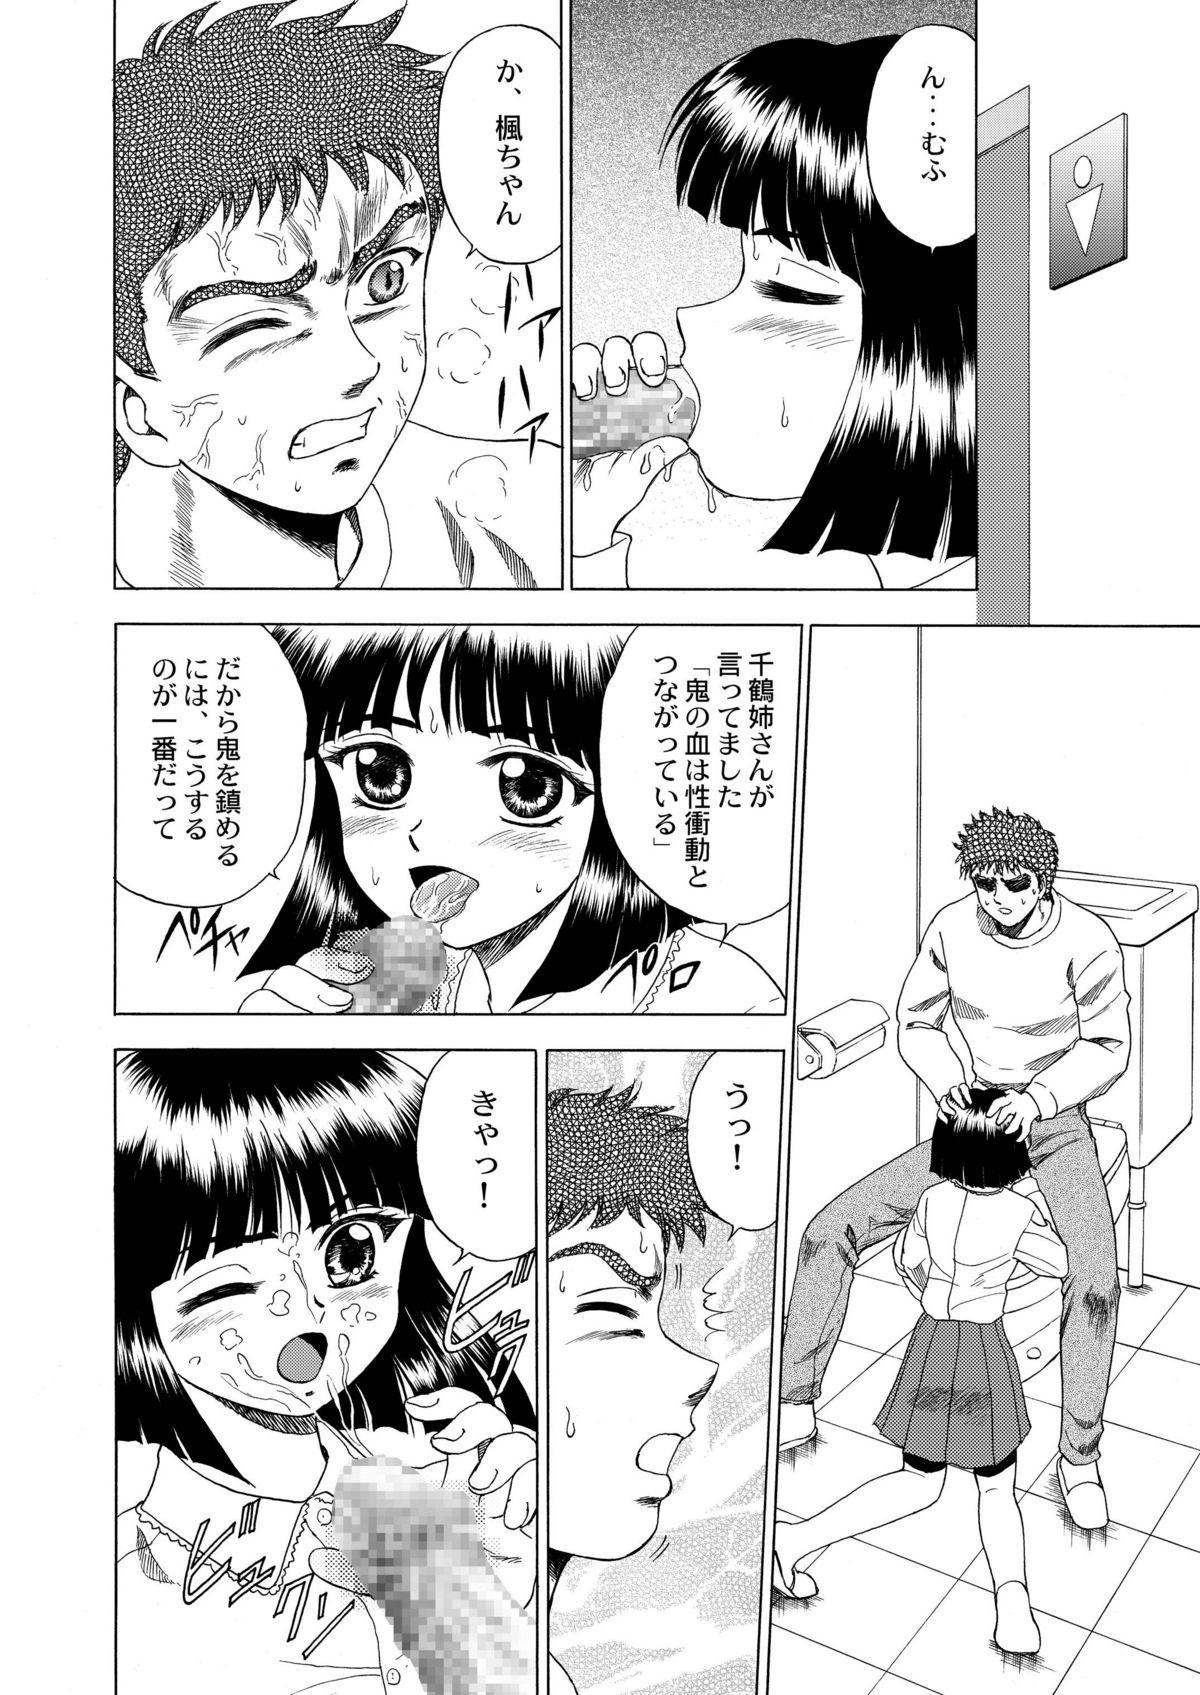 Natural Tits Gekkouki Dai ni Yoru - Tsukihime Kizuato Femdom Clips - Page 11